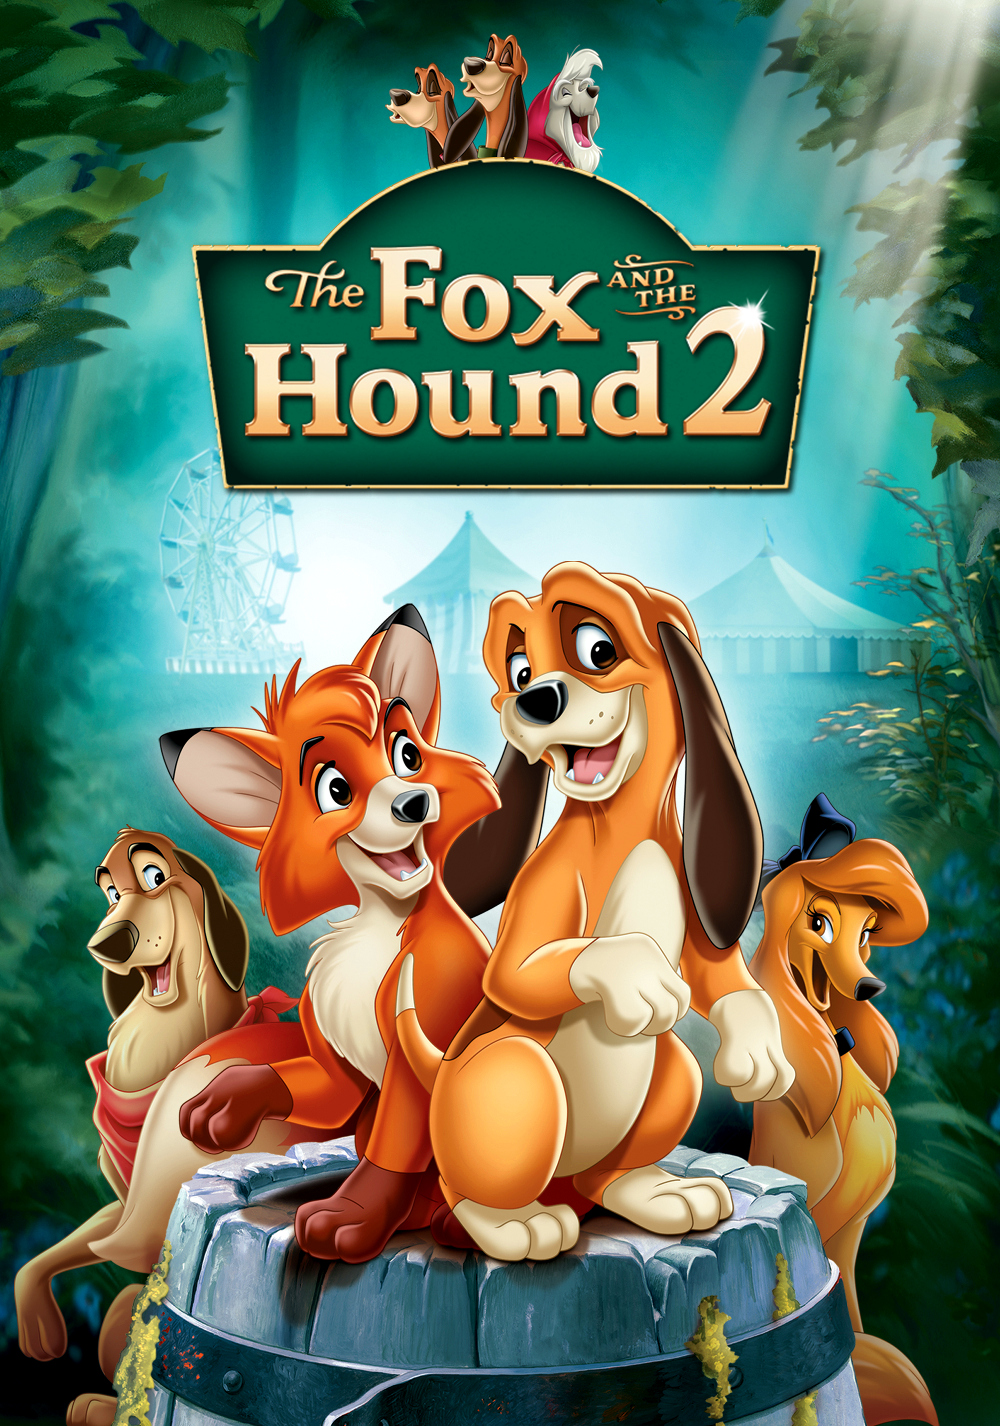 ดูหนังออนไลน์ฟรี The Fox and the Hound 2 (2006) เพื่อนแท้ในป่าใหญ่ 2 หนังเต็มเรื่อง หนังมาสเตอร์ ดูหนังHD ดูหนังออนไลน์ ดูหนังใหม่